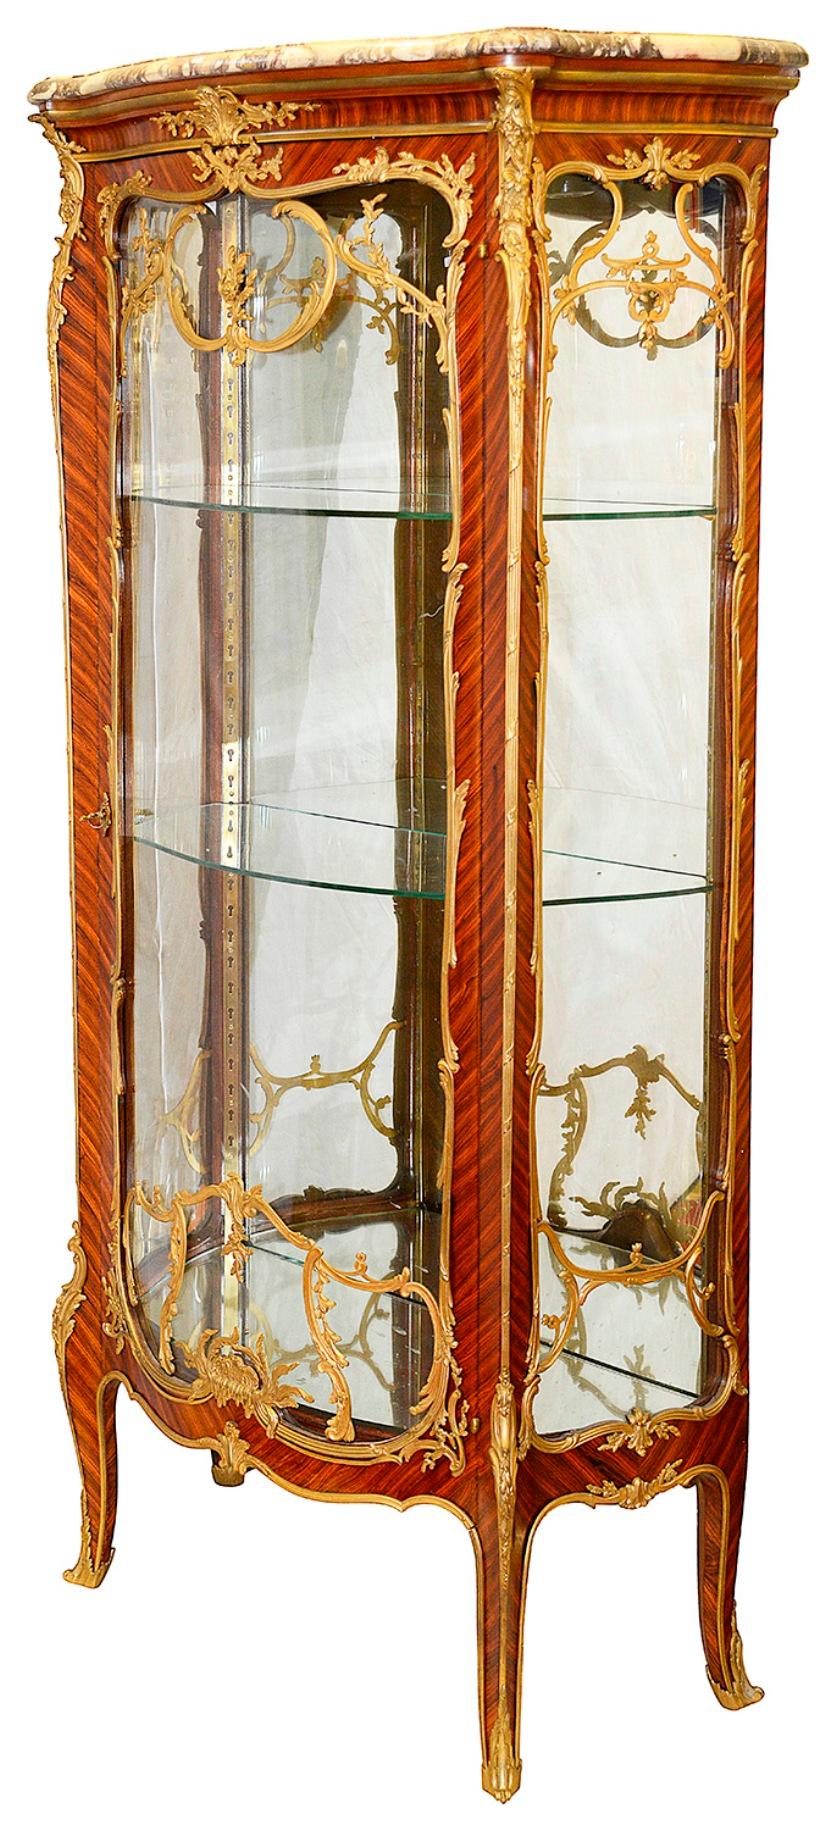 Magnifique et rare paire de vertus de style Louis XVI de la fin du XIXe siècle, chacune avec son plateau de marbre d'origine, de belles montures en bronze doré, les portes en verre à façade serpentine s'ouvrent pour révéler des étagères en verre